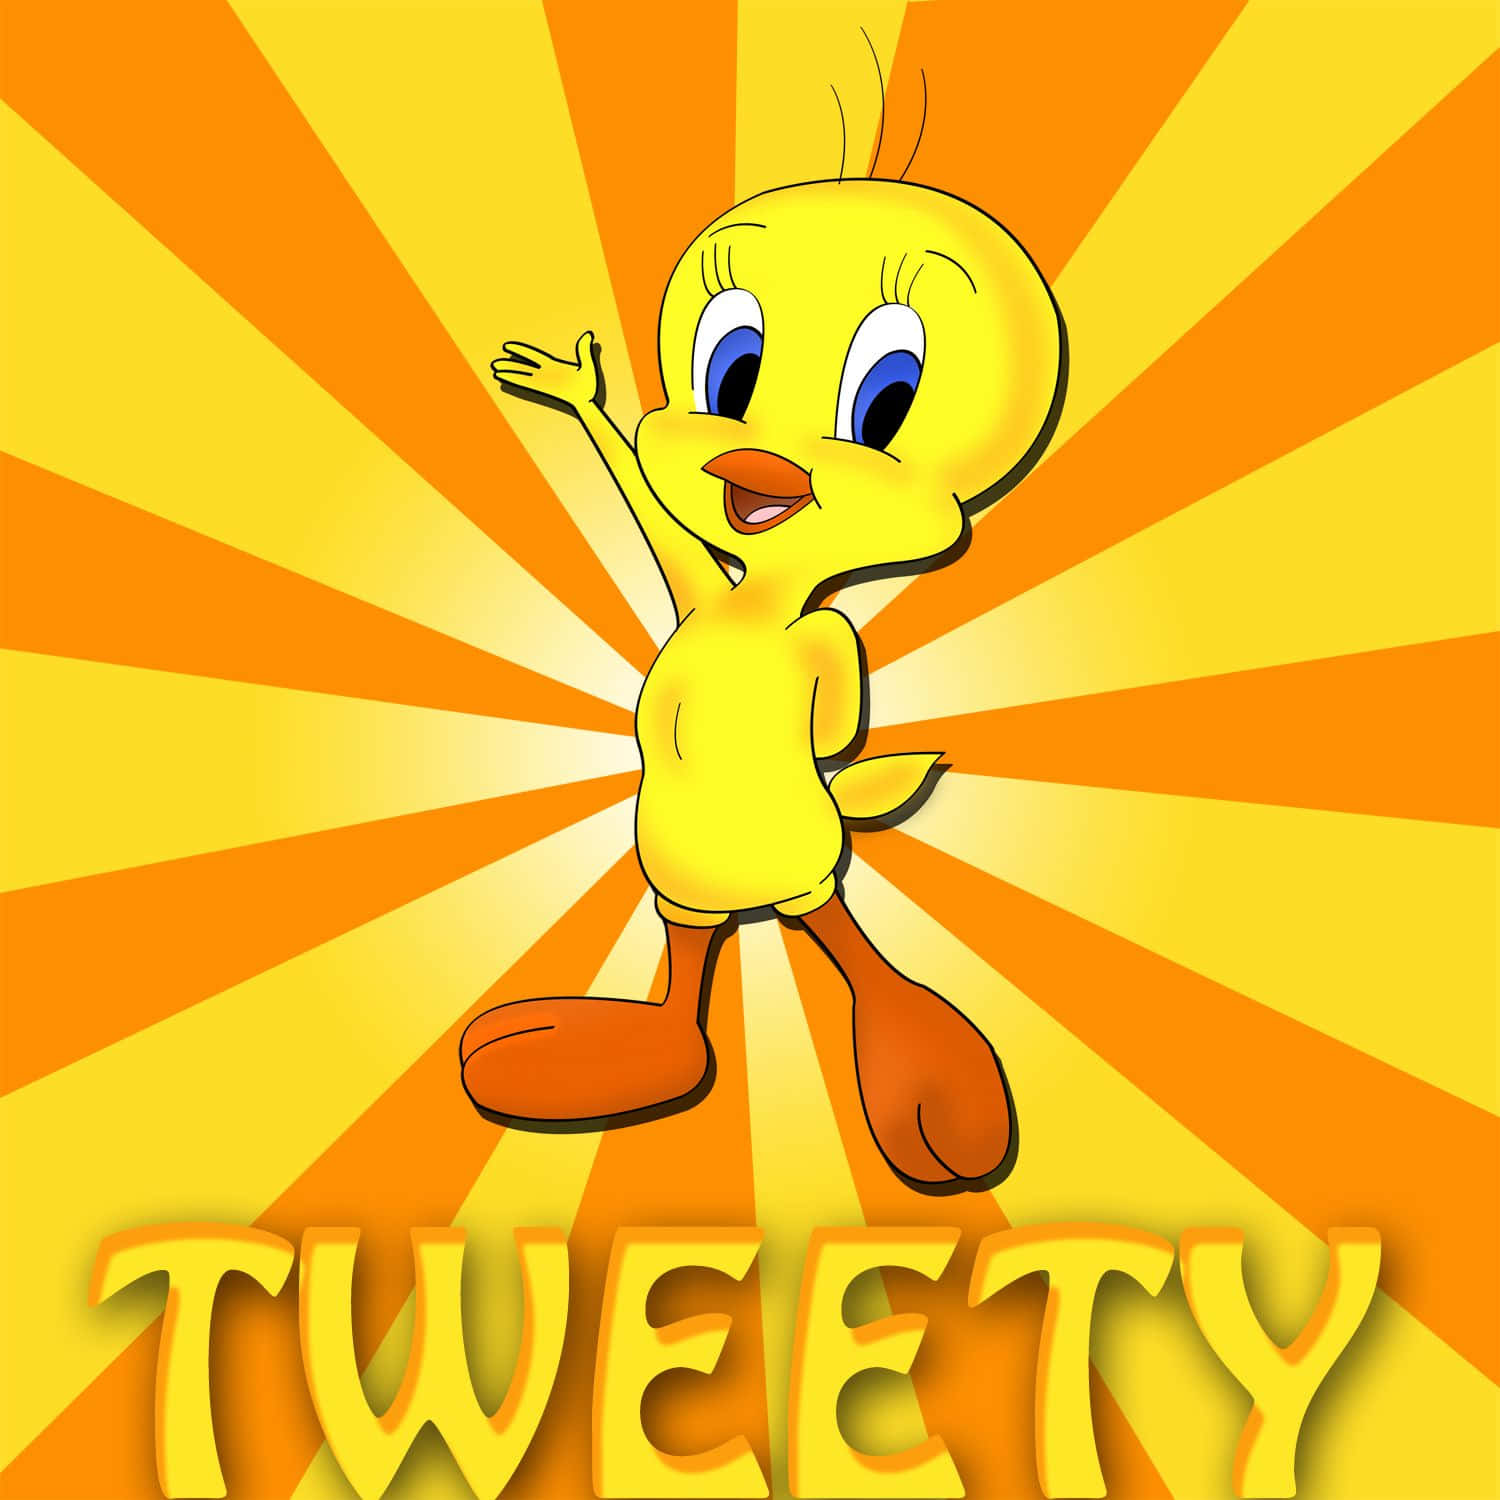 Tweeting With Tweety